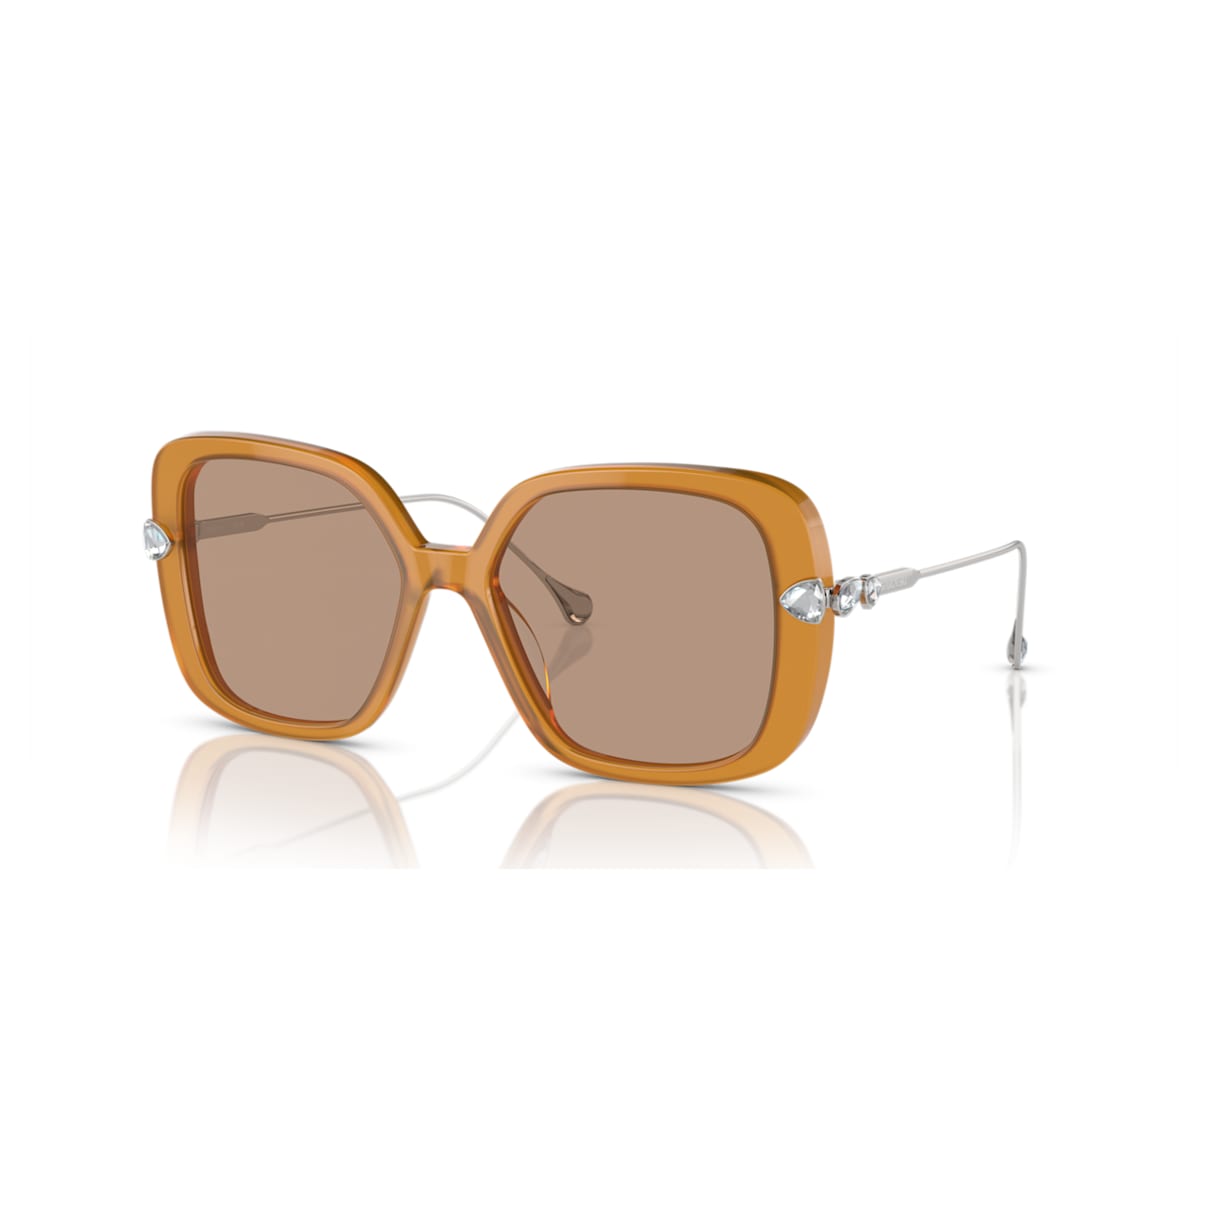 Swarovski Sunglasses In Brown